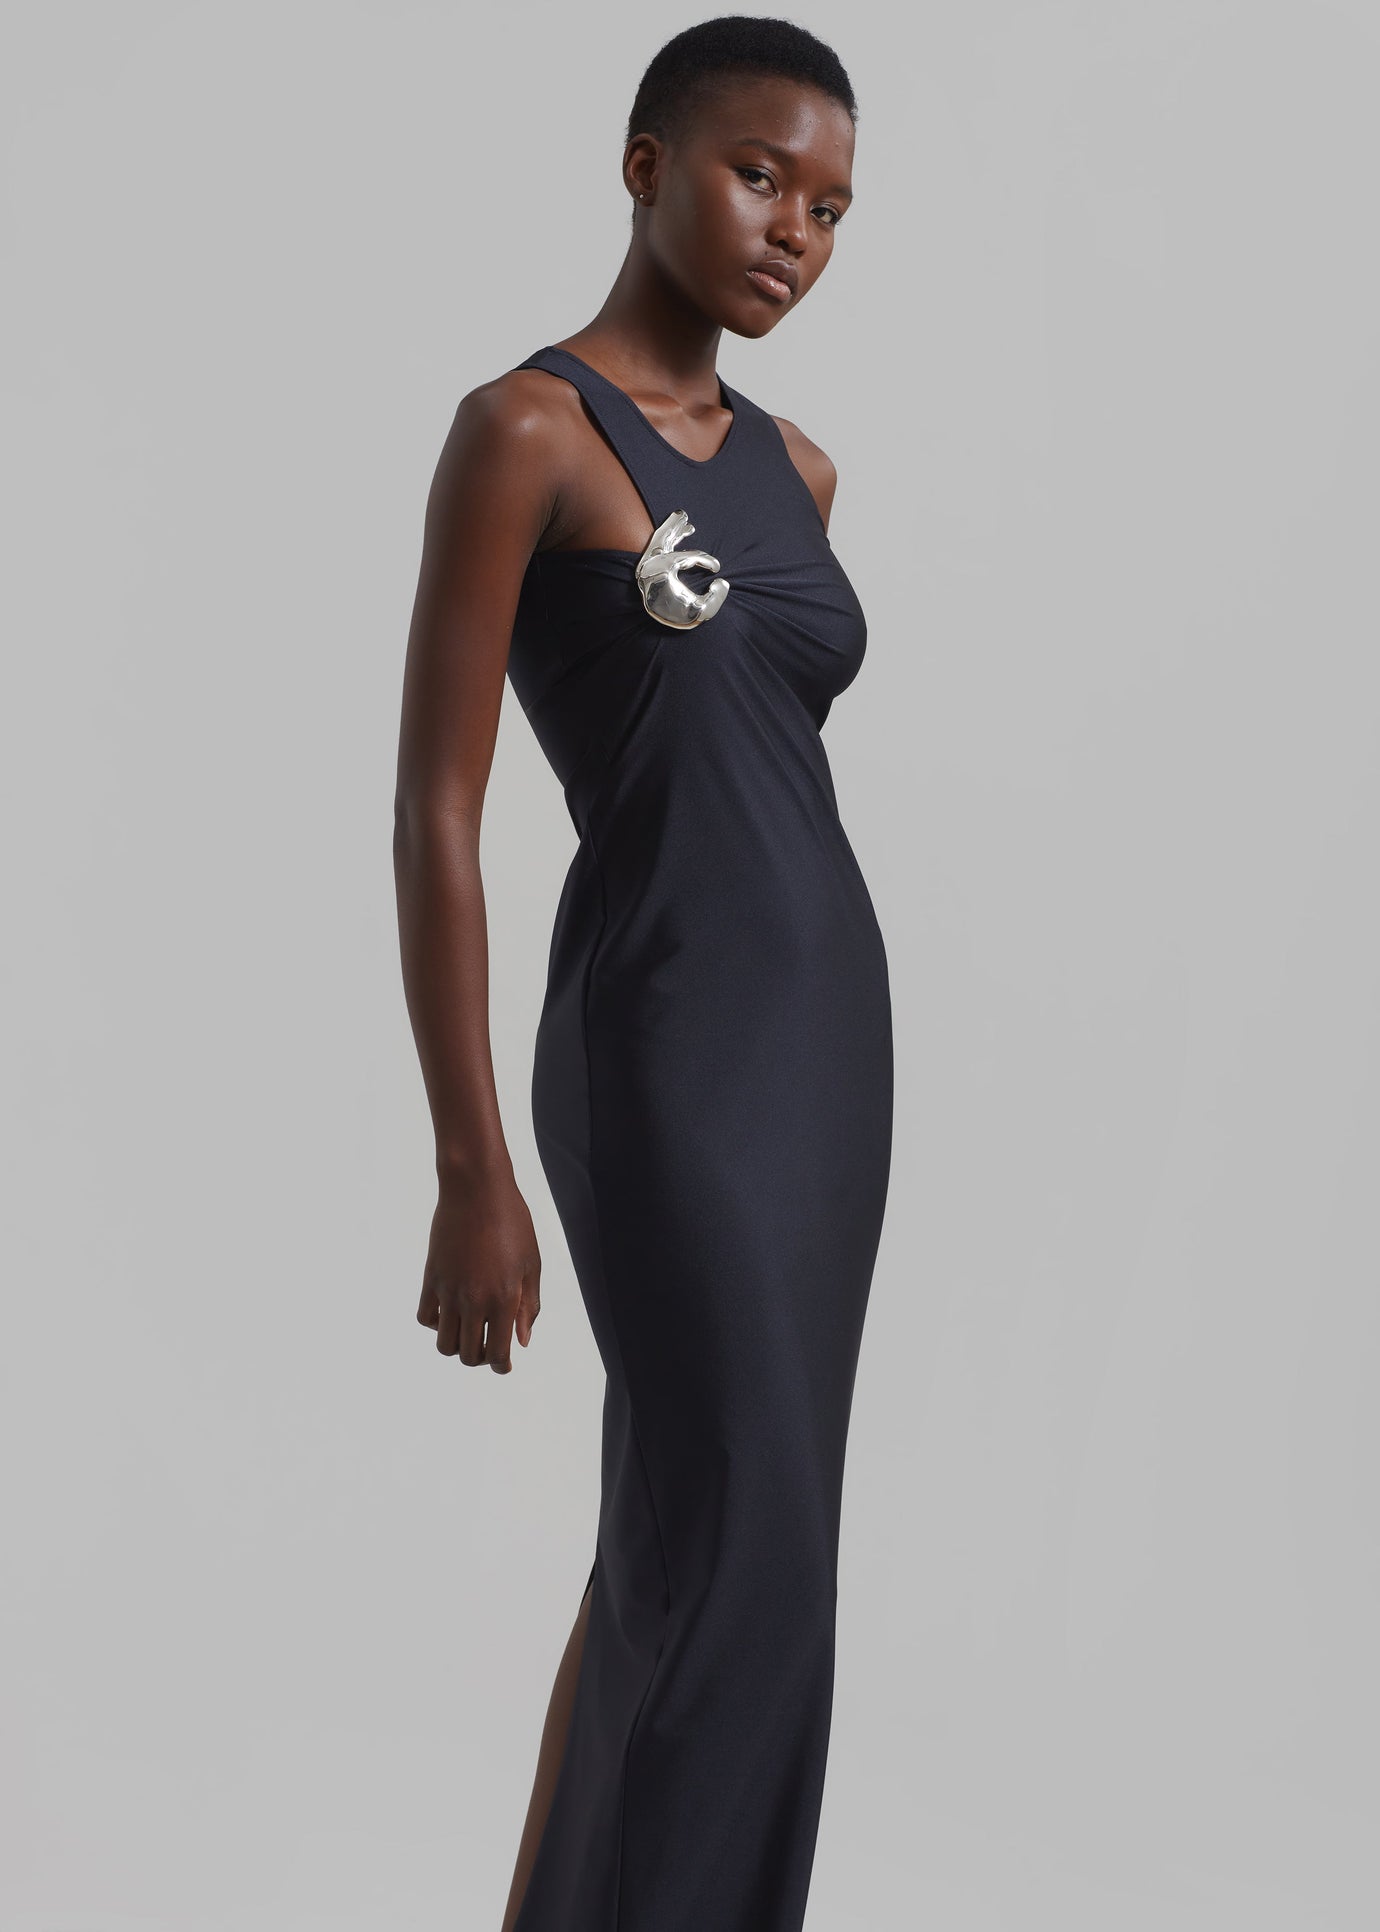 Coperni Single Emoji Dress - Black